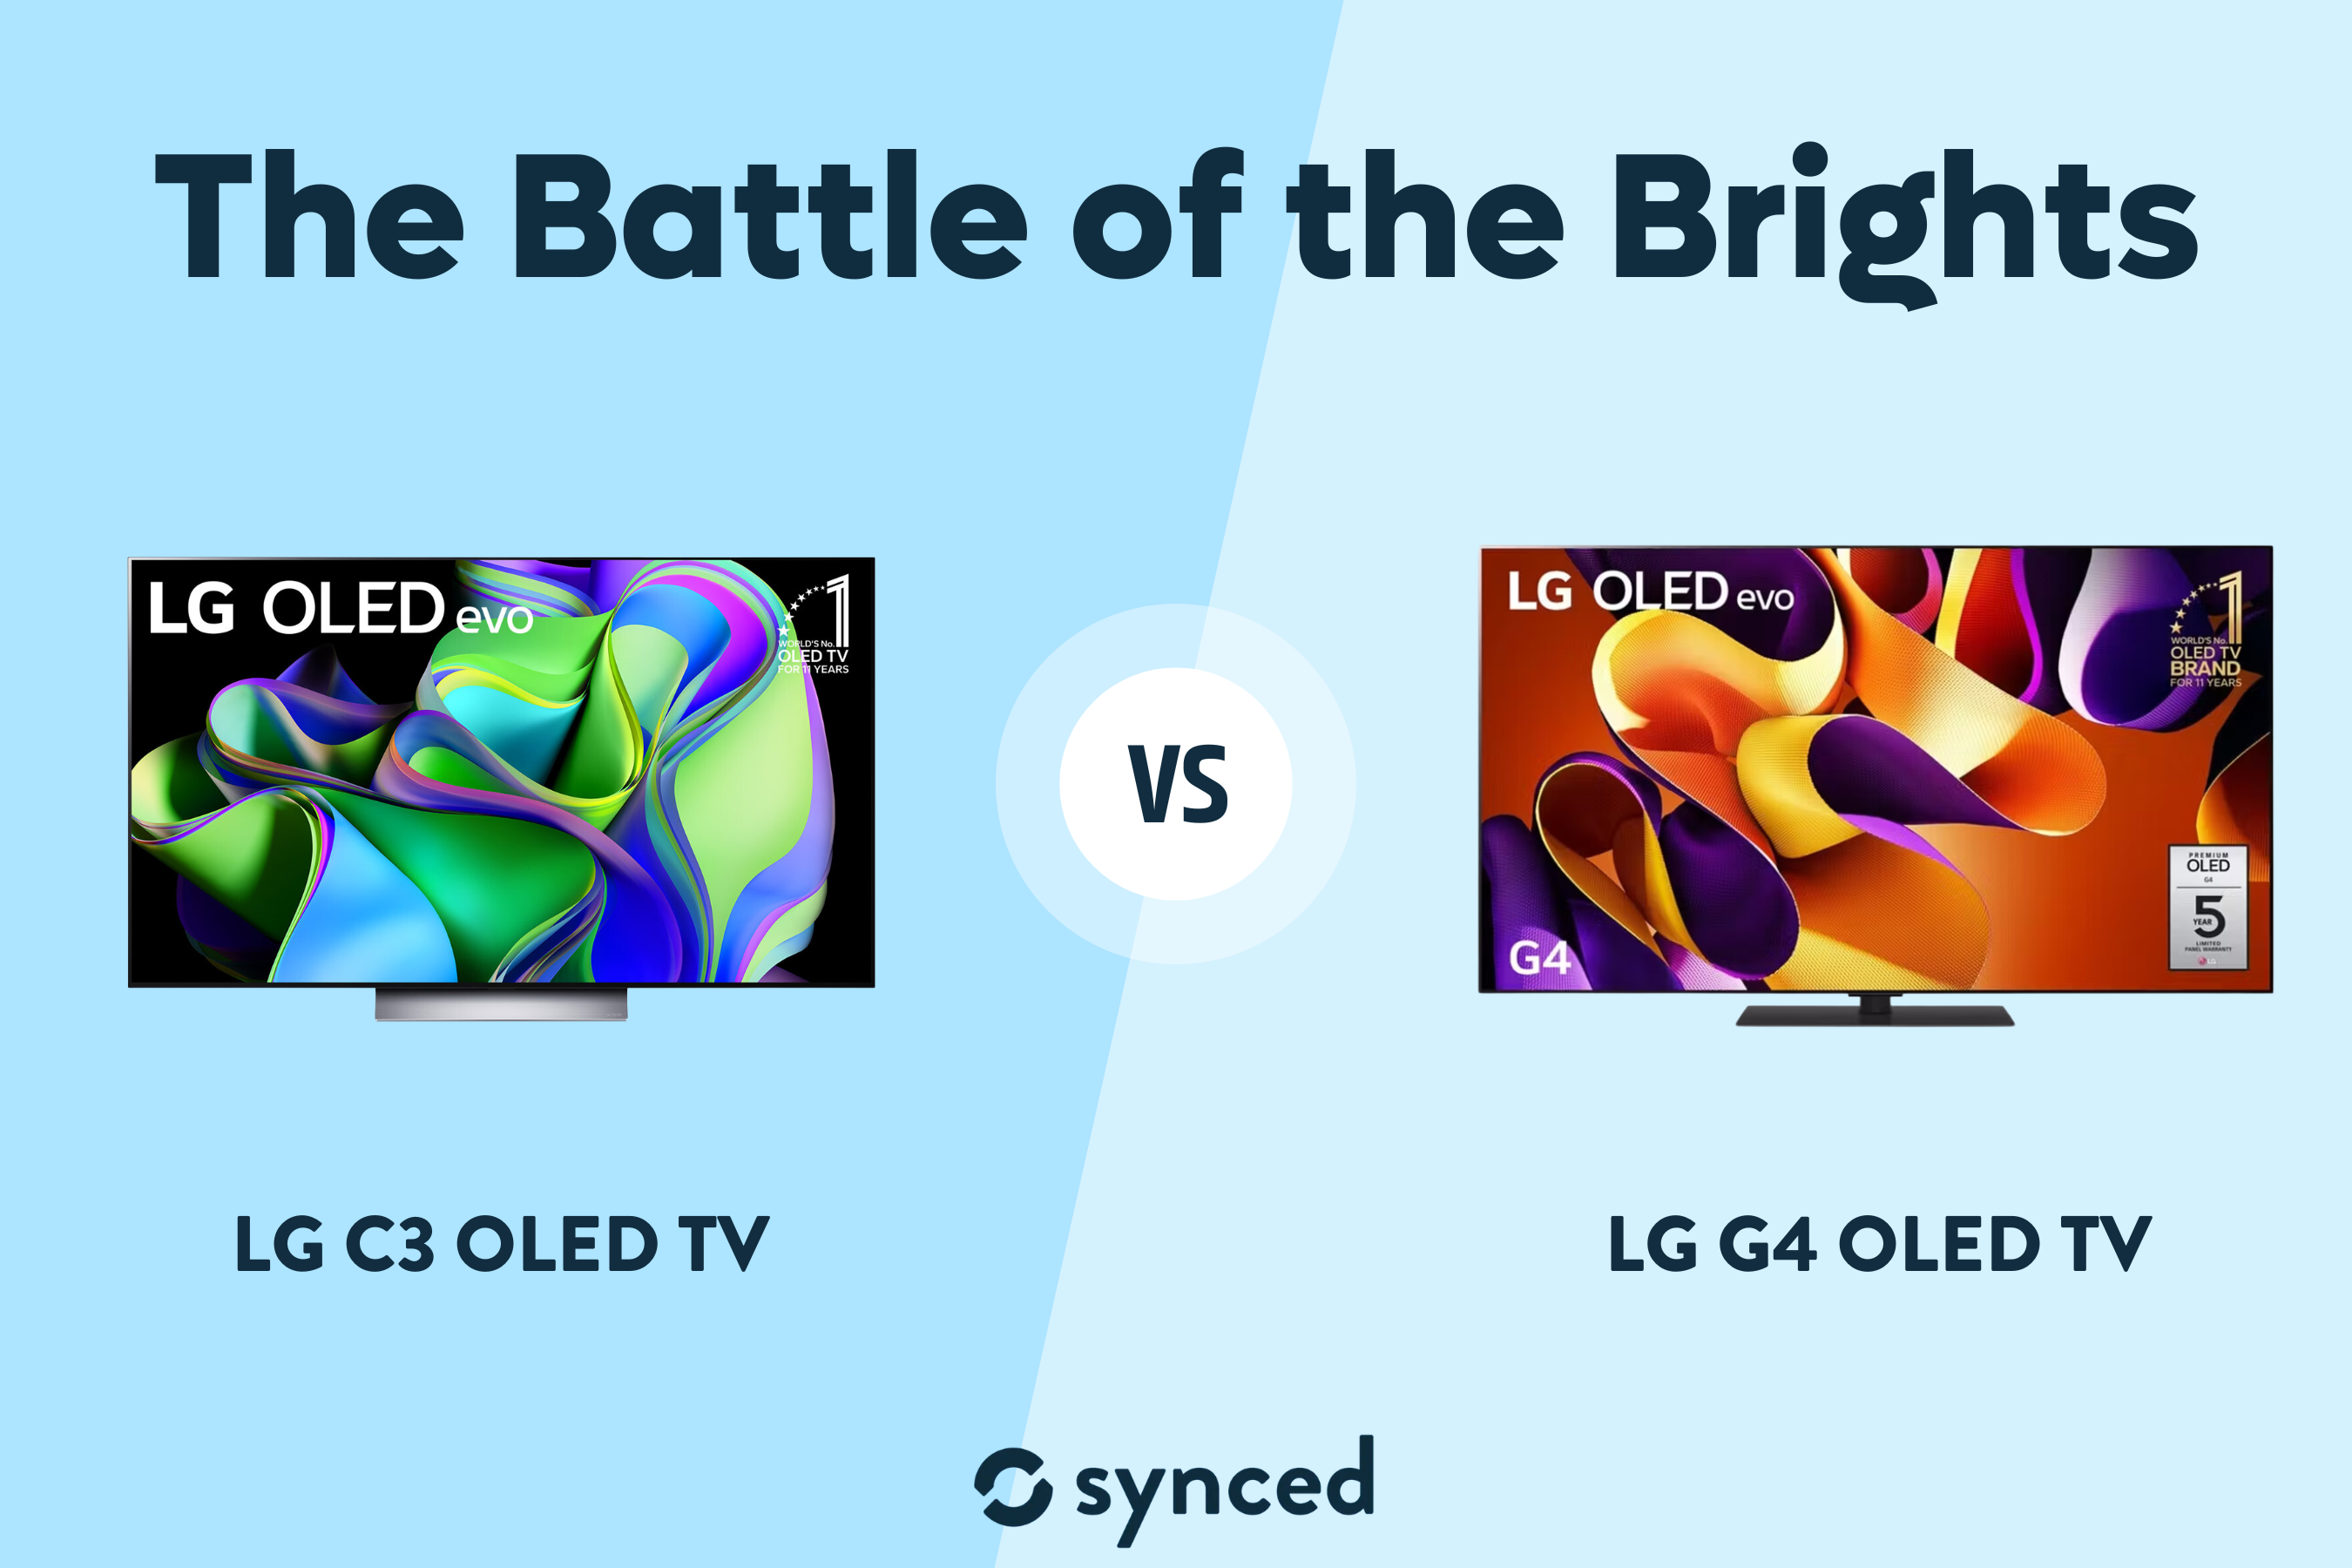 LG C3 OLED TV vs LG G4 OLED TV